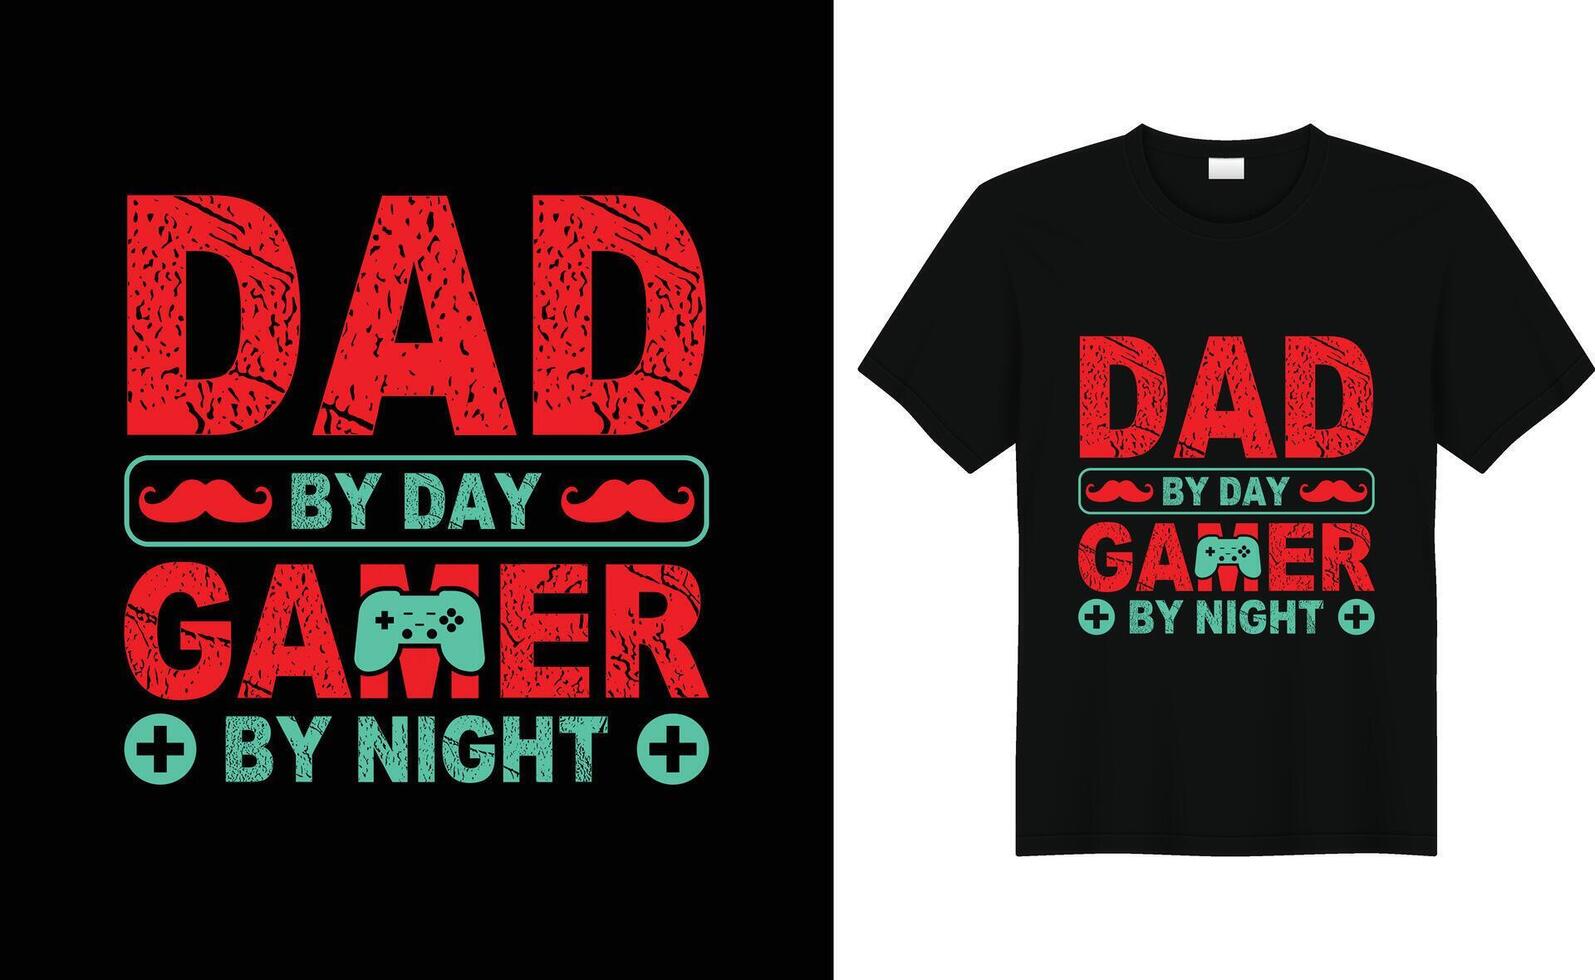 Väter Tag T-Shirt Design Vektor, zum T-Shirt drucken und andere Verwendet, kostenlos Vektor